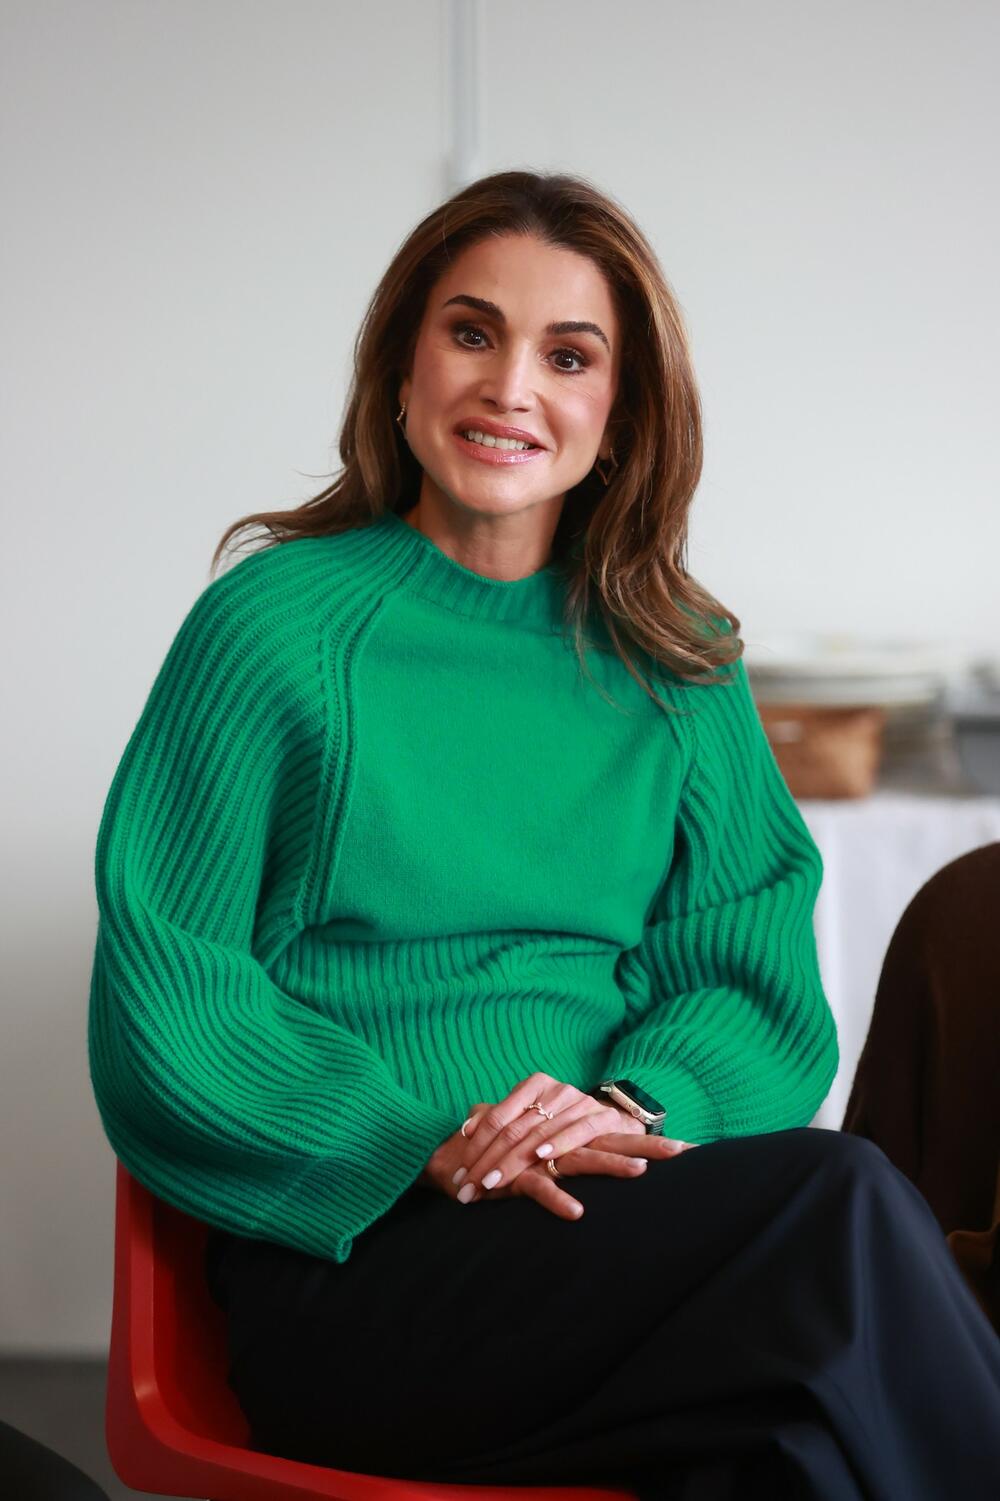 Kraljica Ranija od Jordana na samitu u Belfastu nosila je jednostavnu kombinaciju džempera i poslovnih pantalona